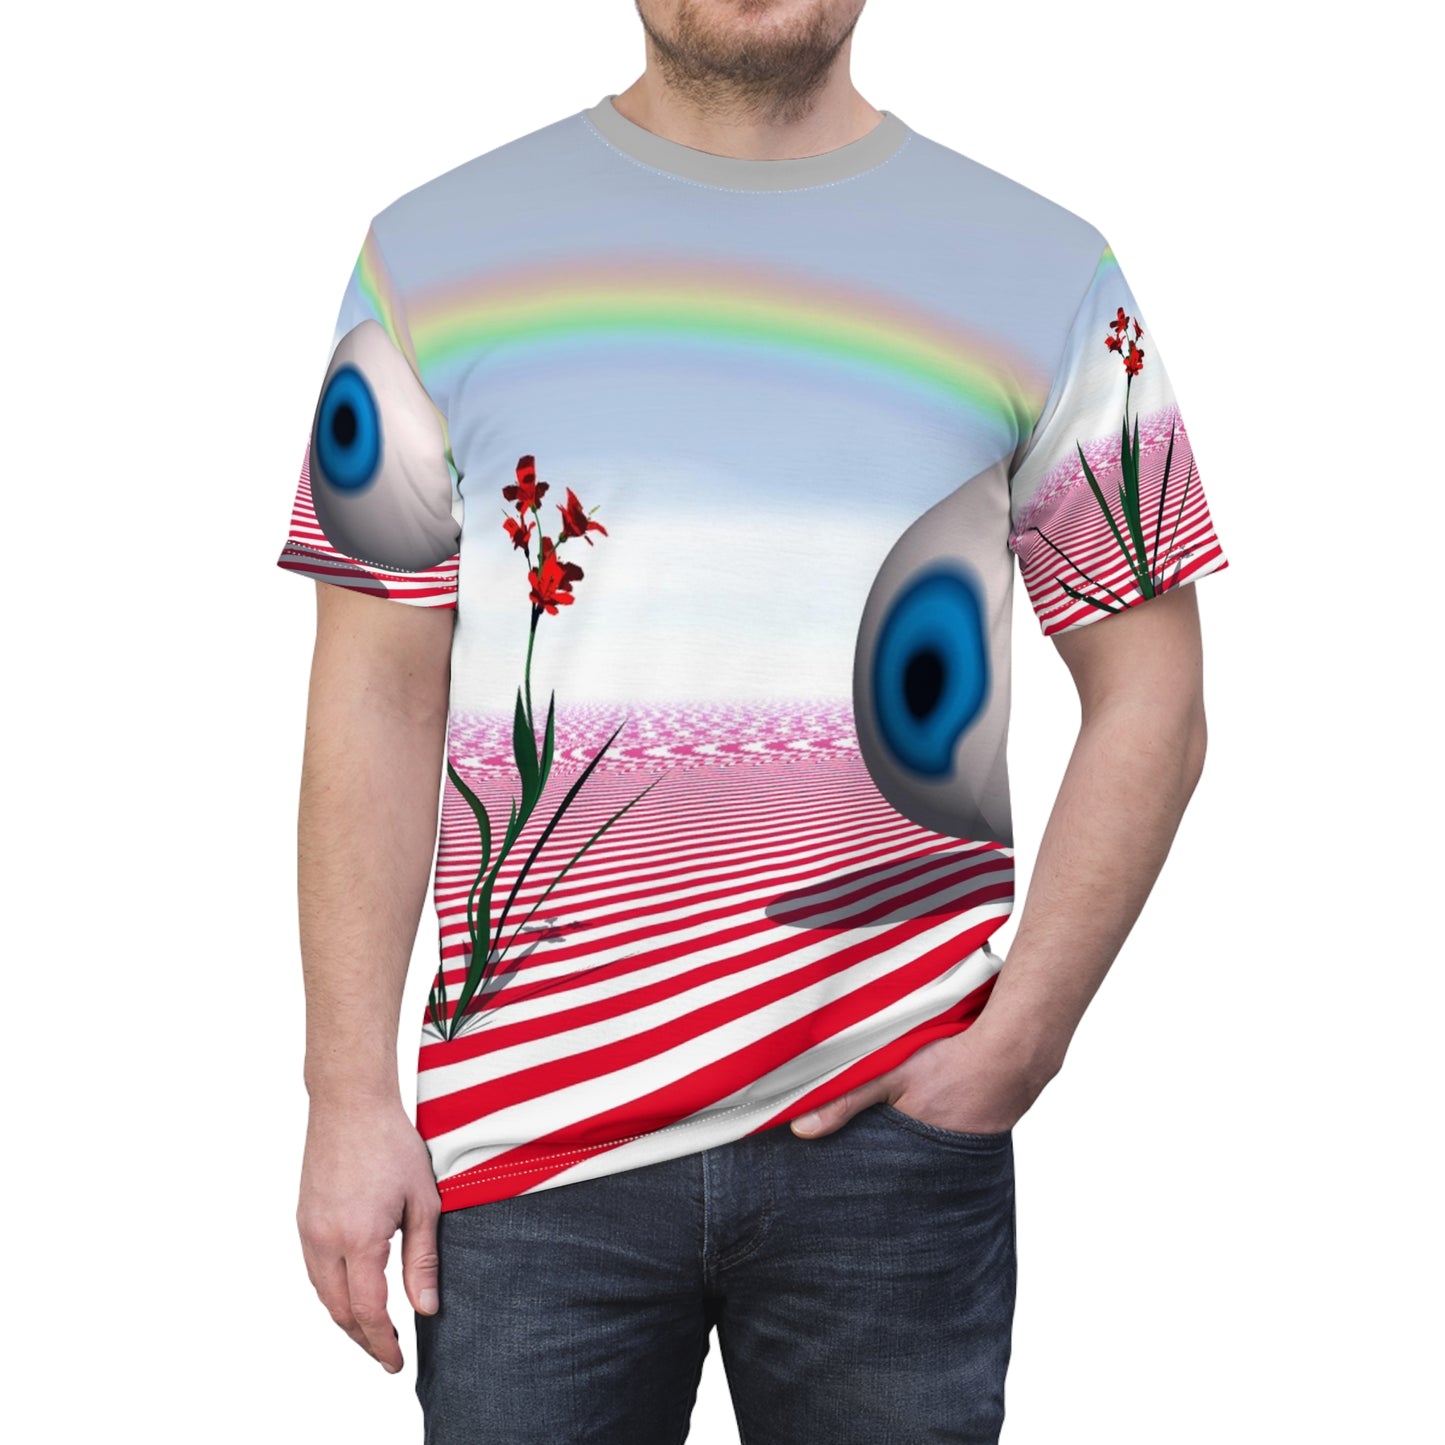 Dreamcore Weirdcore Unisex T-Shirt